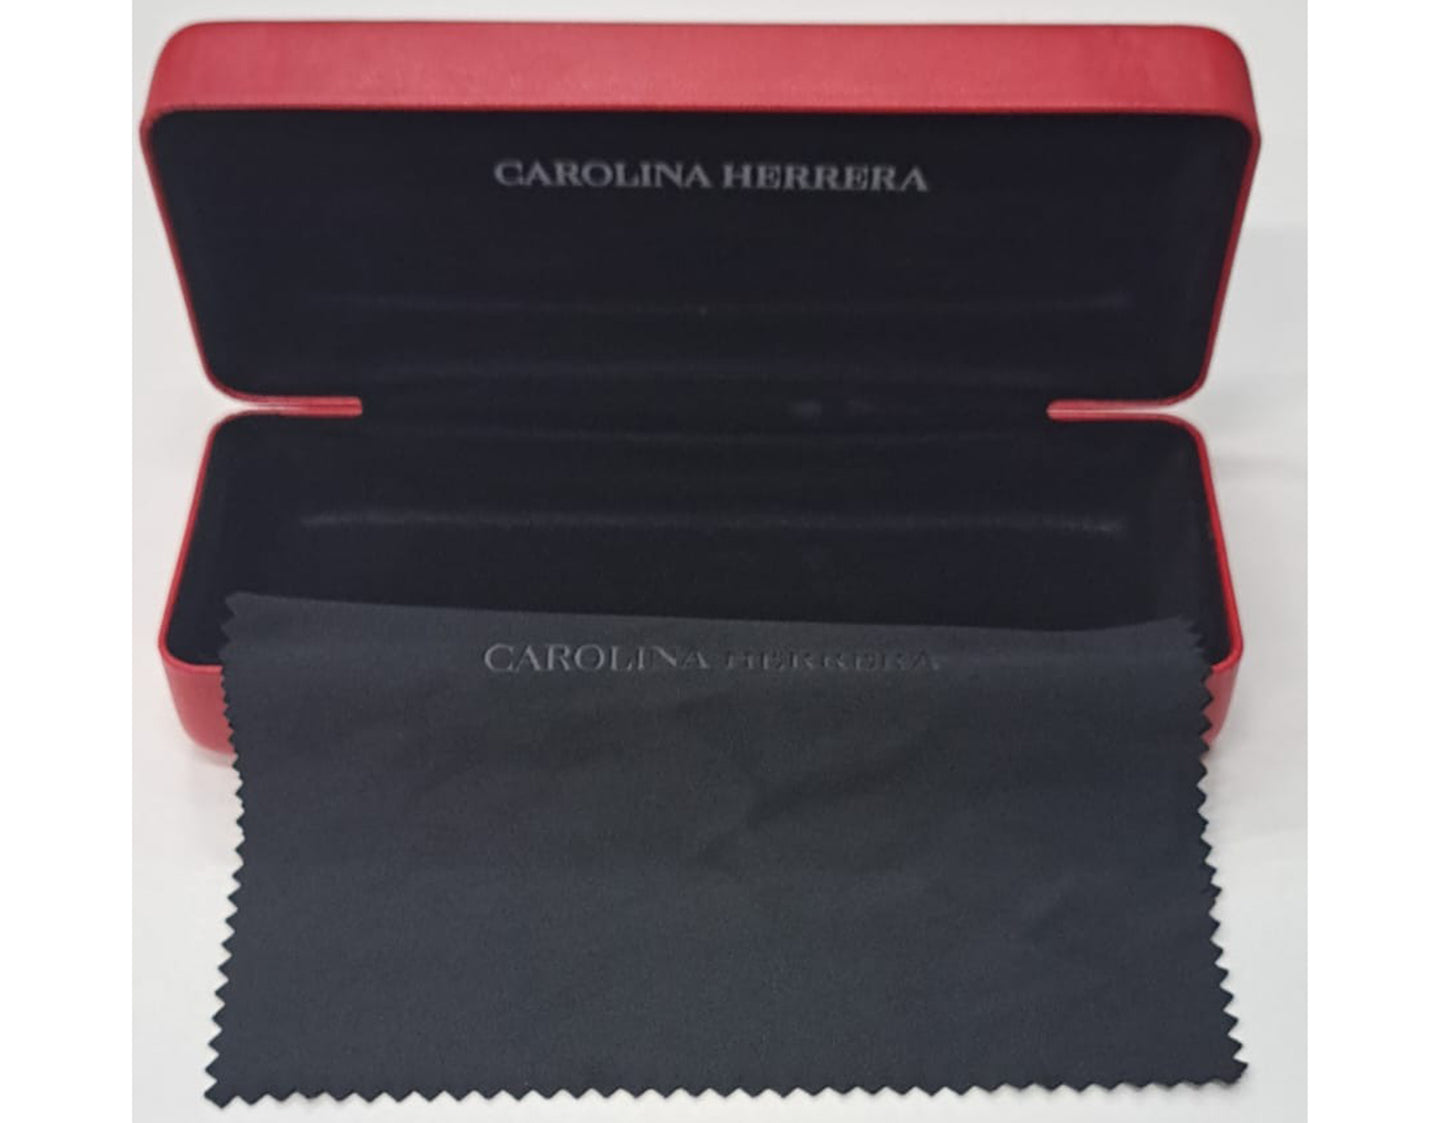 Carolina Herrera VHE876V-0991-53 53mm New Eyeglasses